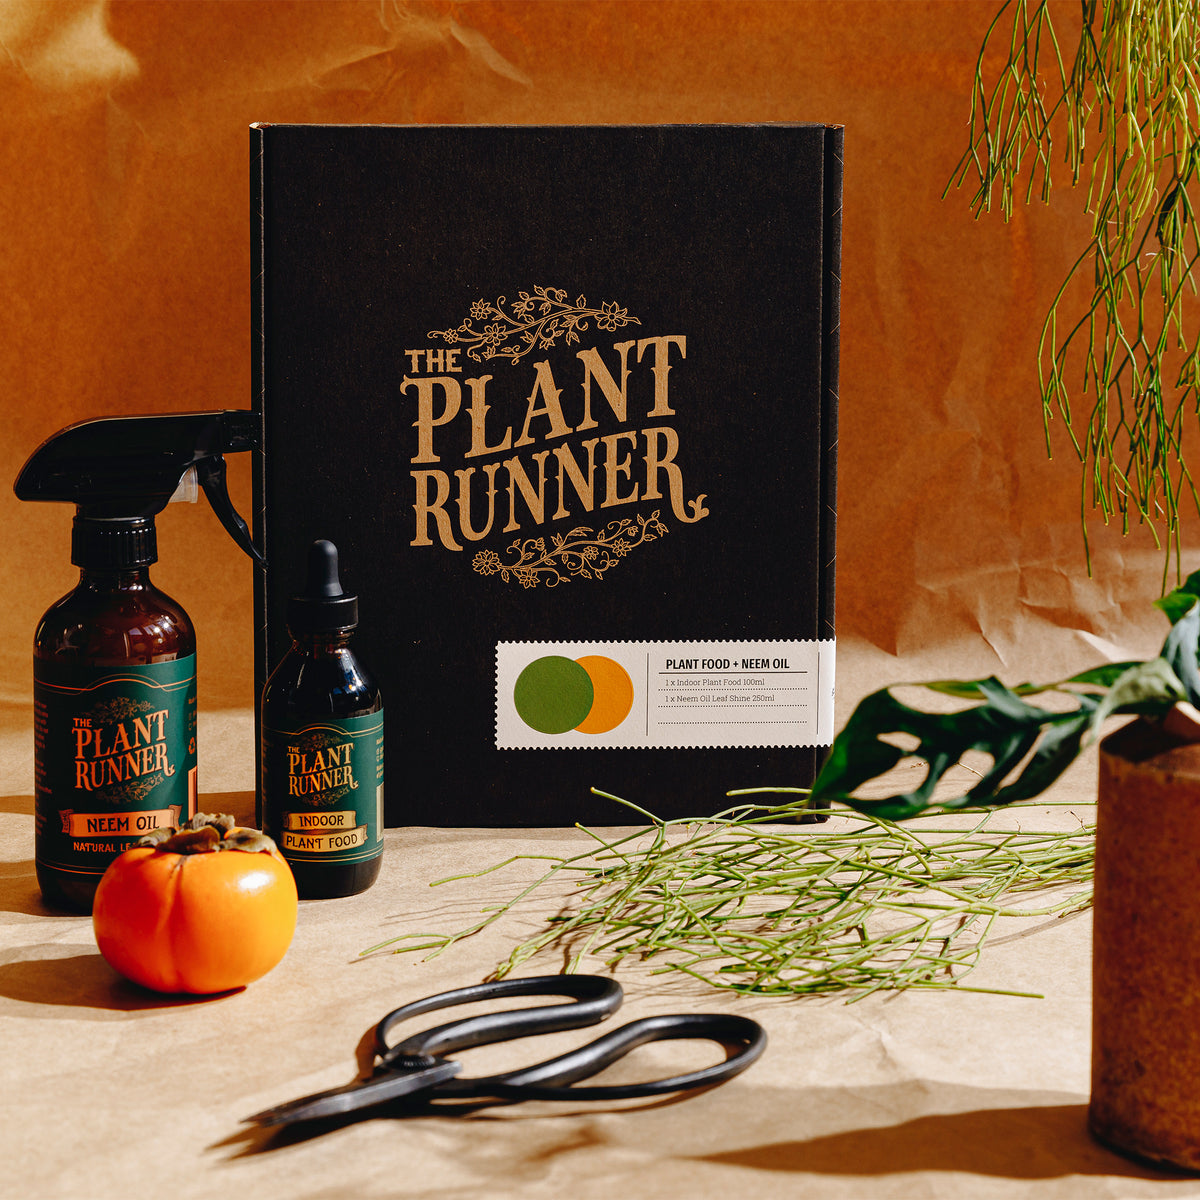 Plant Care Essentials Kit